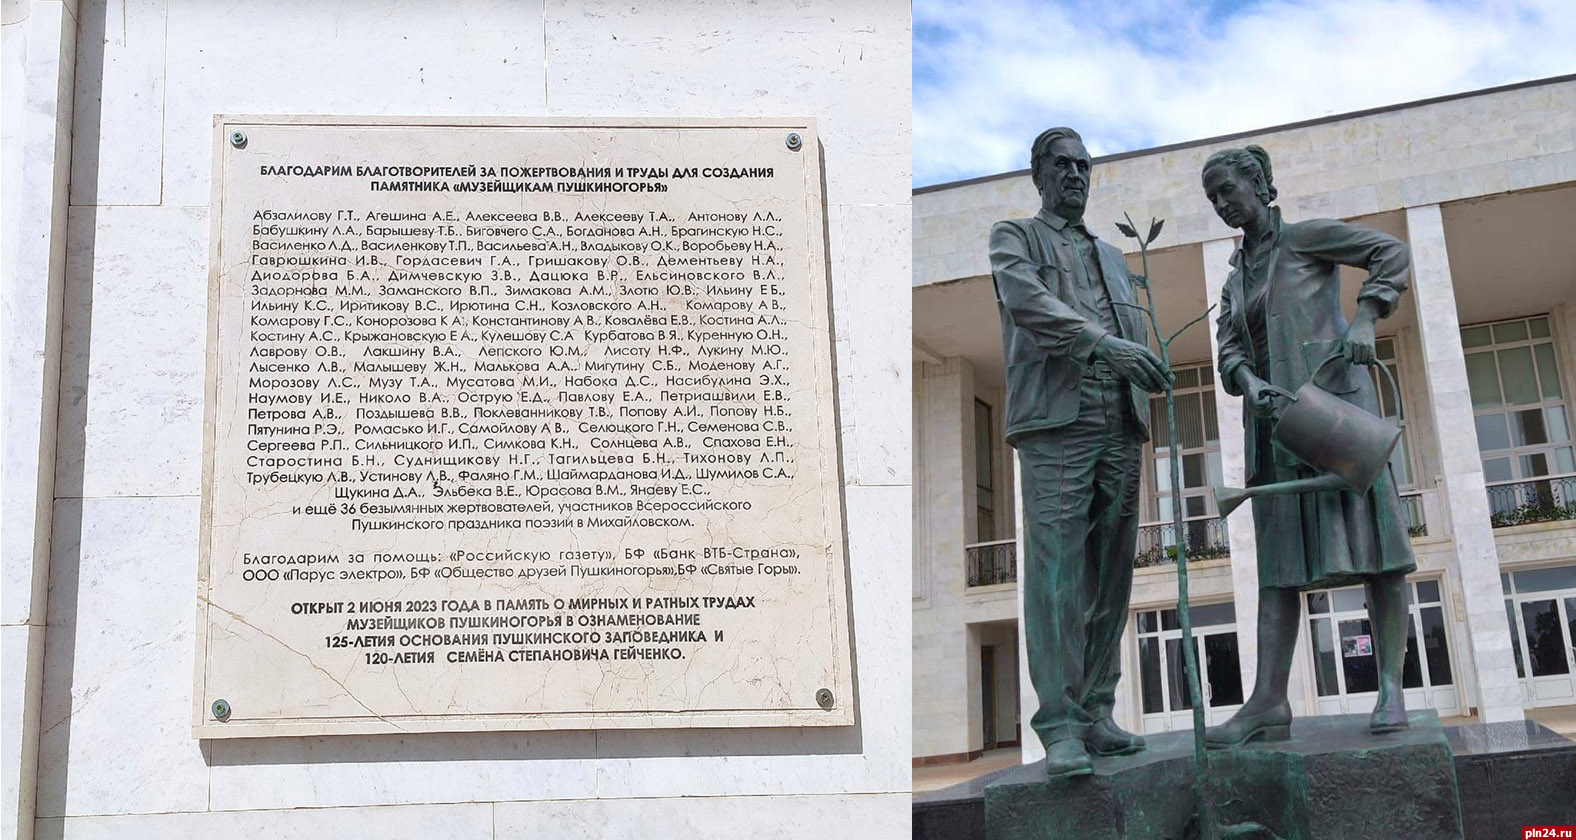 Фотофакт: В «Михайловском» назвали имена пожертвовавших на памятник «Музейщикам Пушкиногорья»